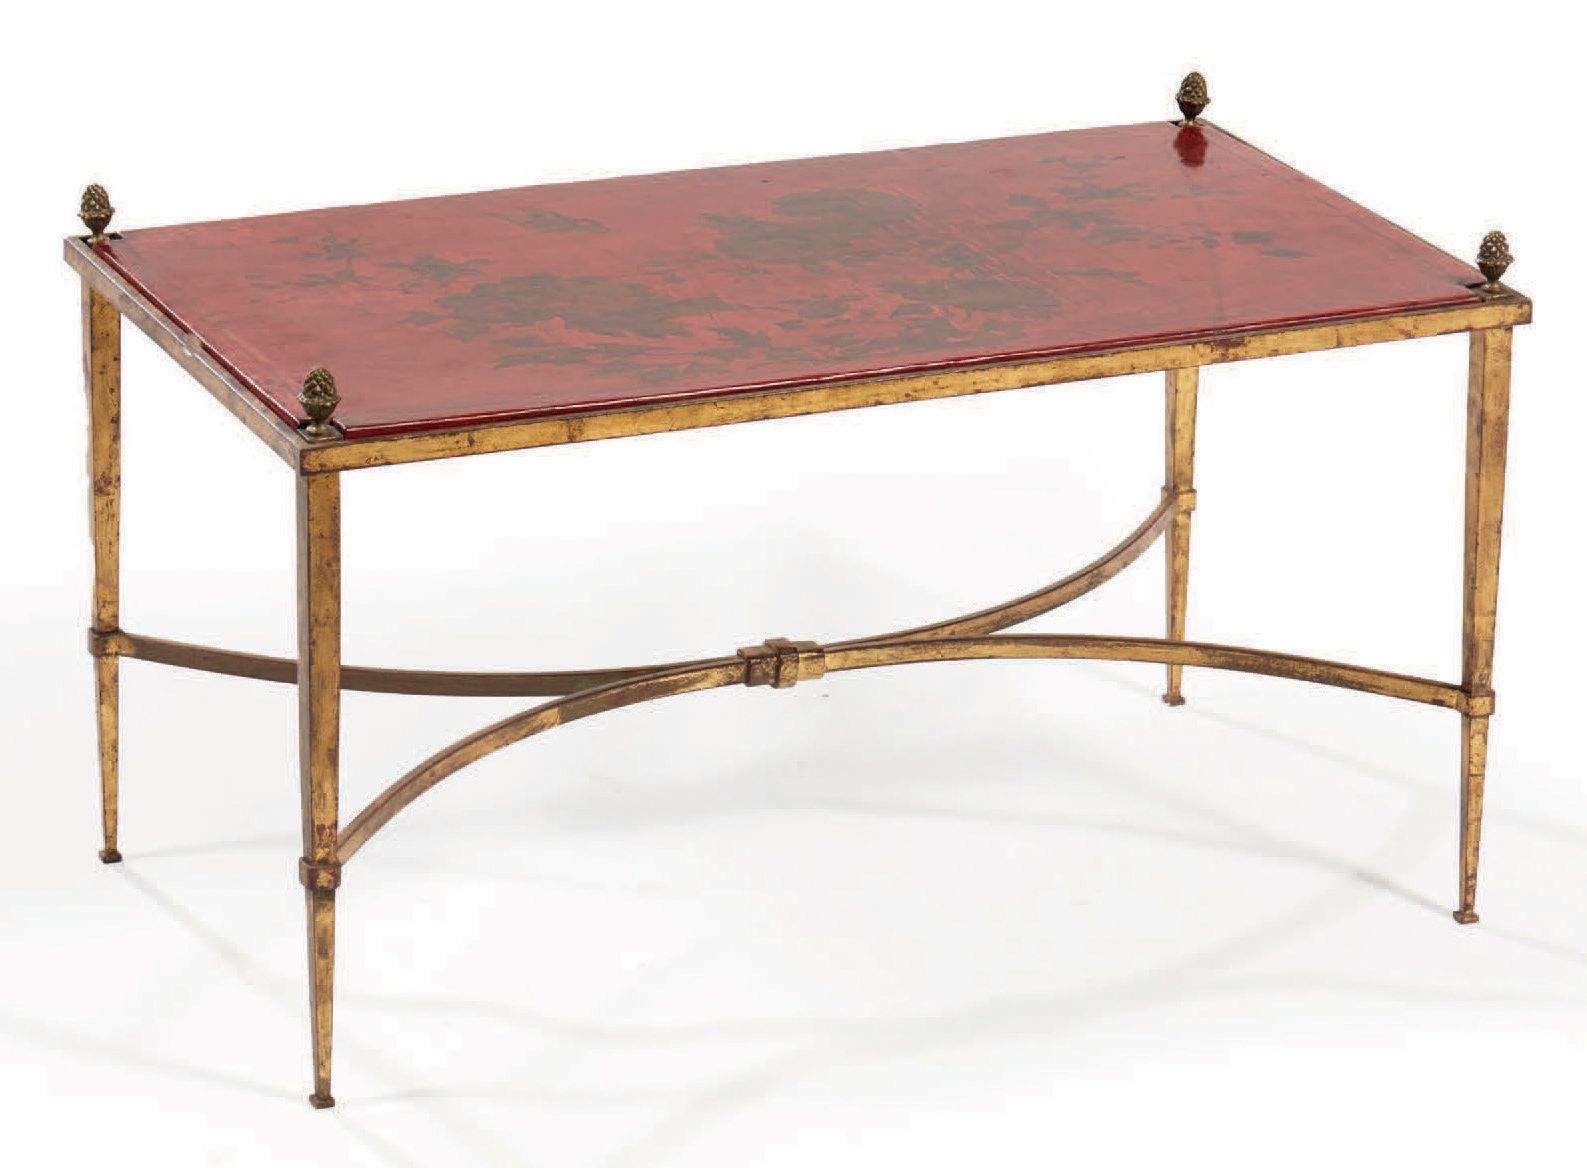 Maison RAMSAY 锻铁咖啡桌有金色的铜锈，长方形的漆木桌面上装饰着红底金花的图案
。底座有护套，上面有松果
高：44 宽：78 深：43.5厘米